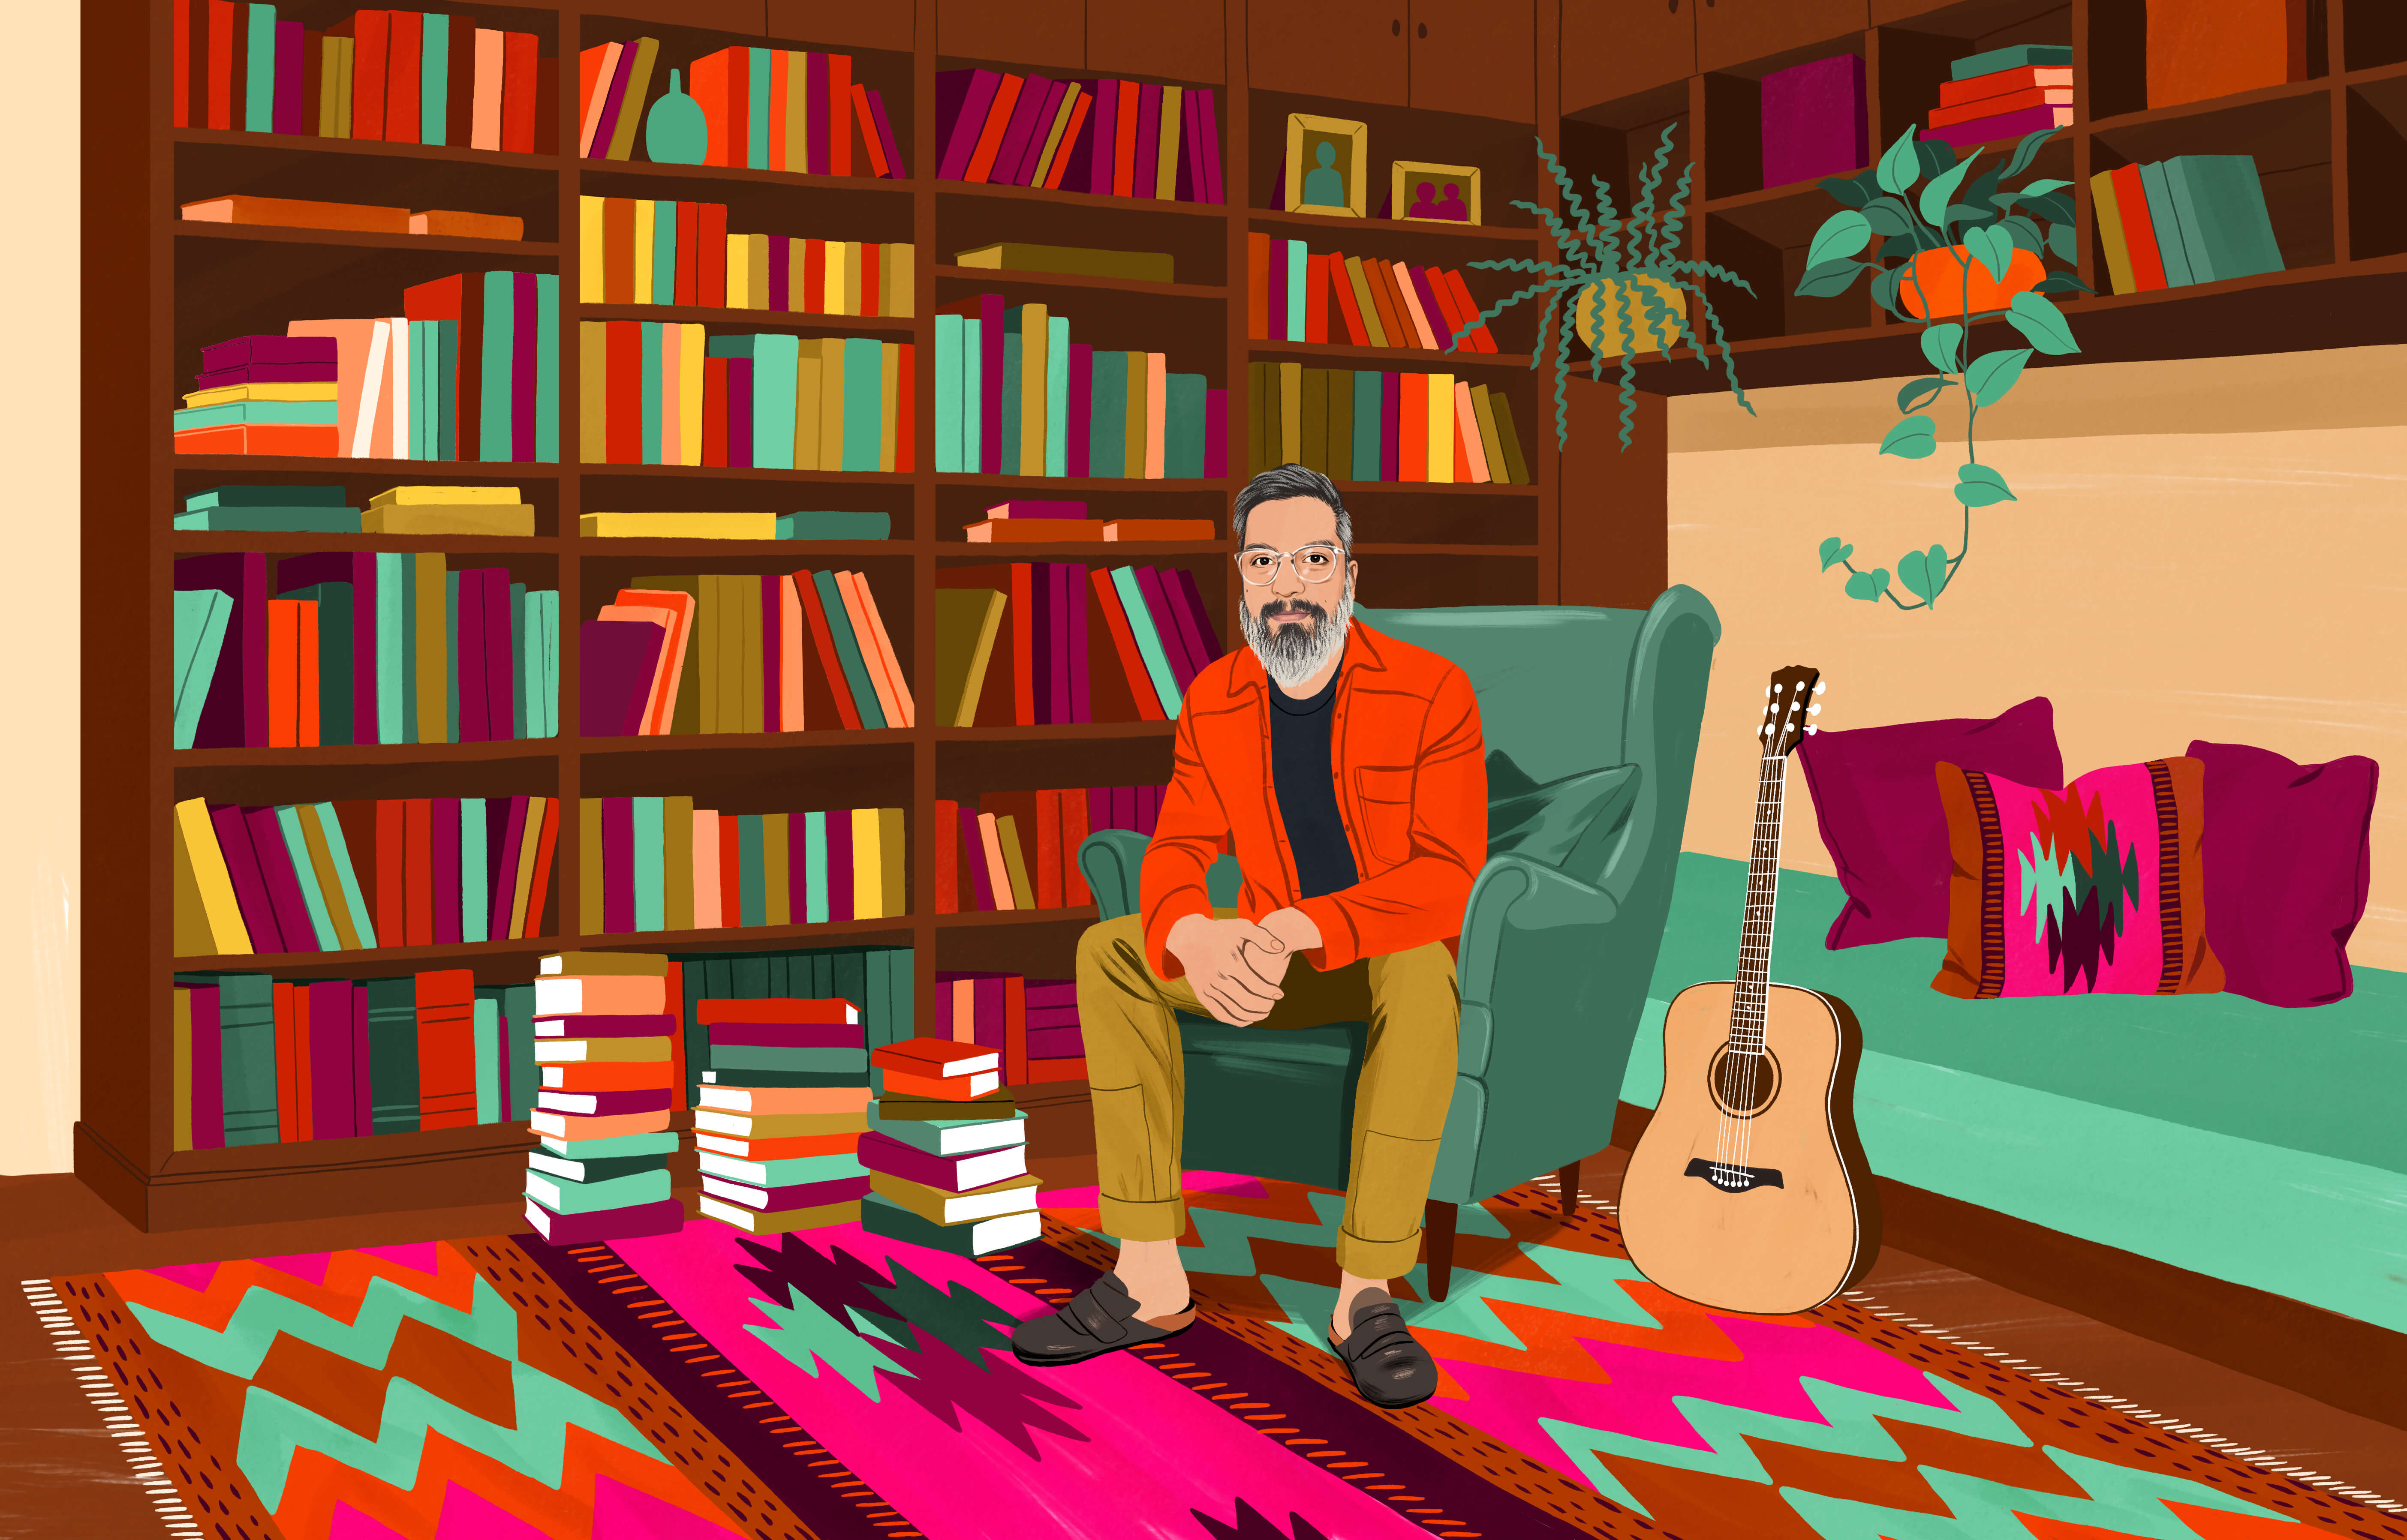 ウイングチェアに座ったJPを本棚や床に積まれたたくさんの本が囲んでいる。床にはカラフルな模様のあるチリの伝統的なラグが敷かれている。彼の手の届くところにギターが置かれている。